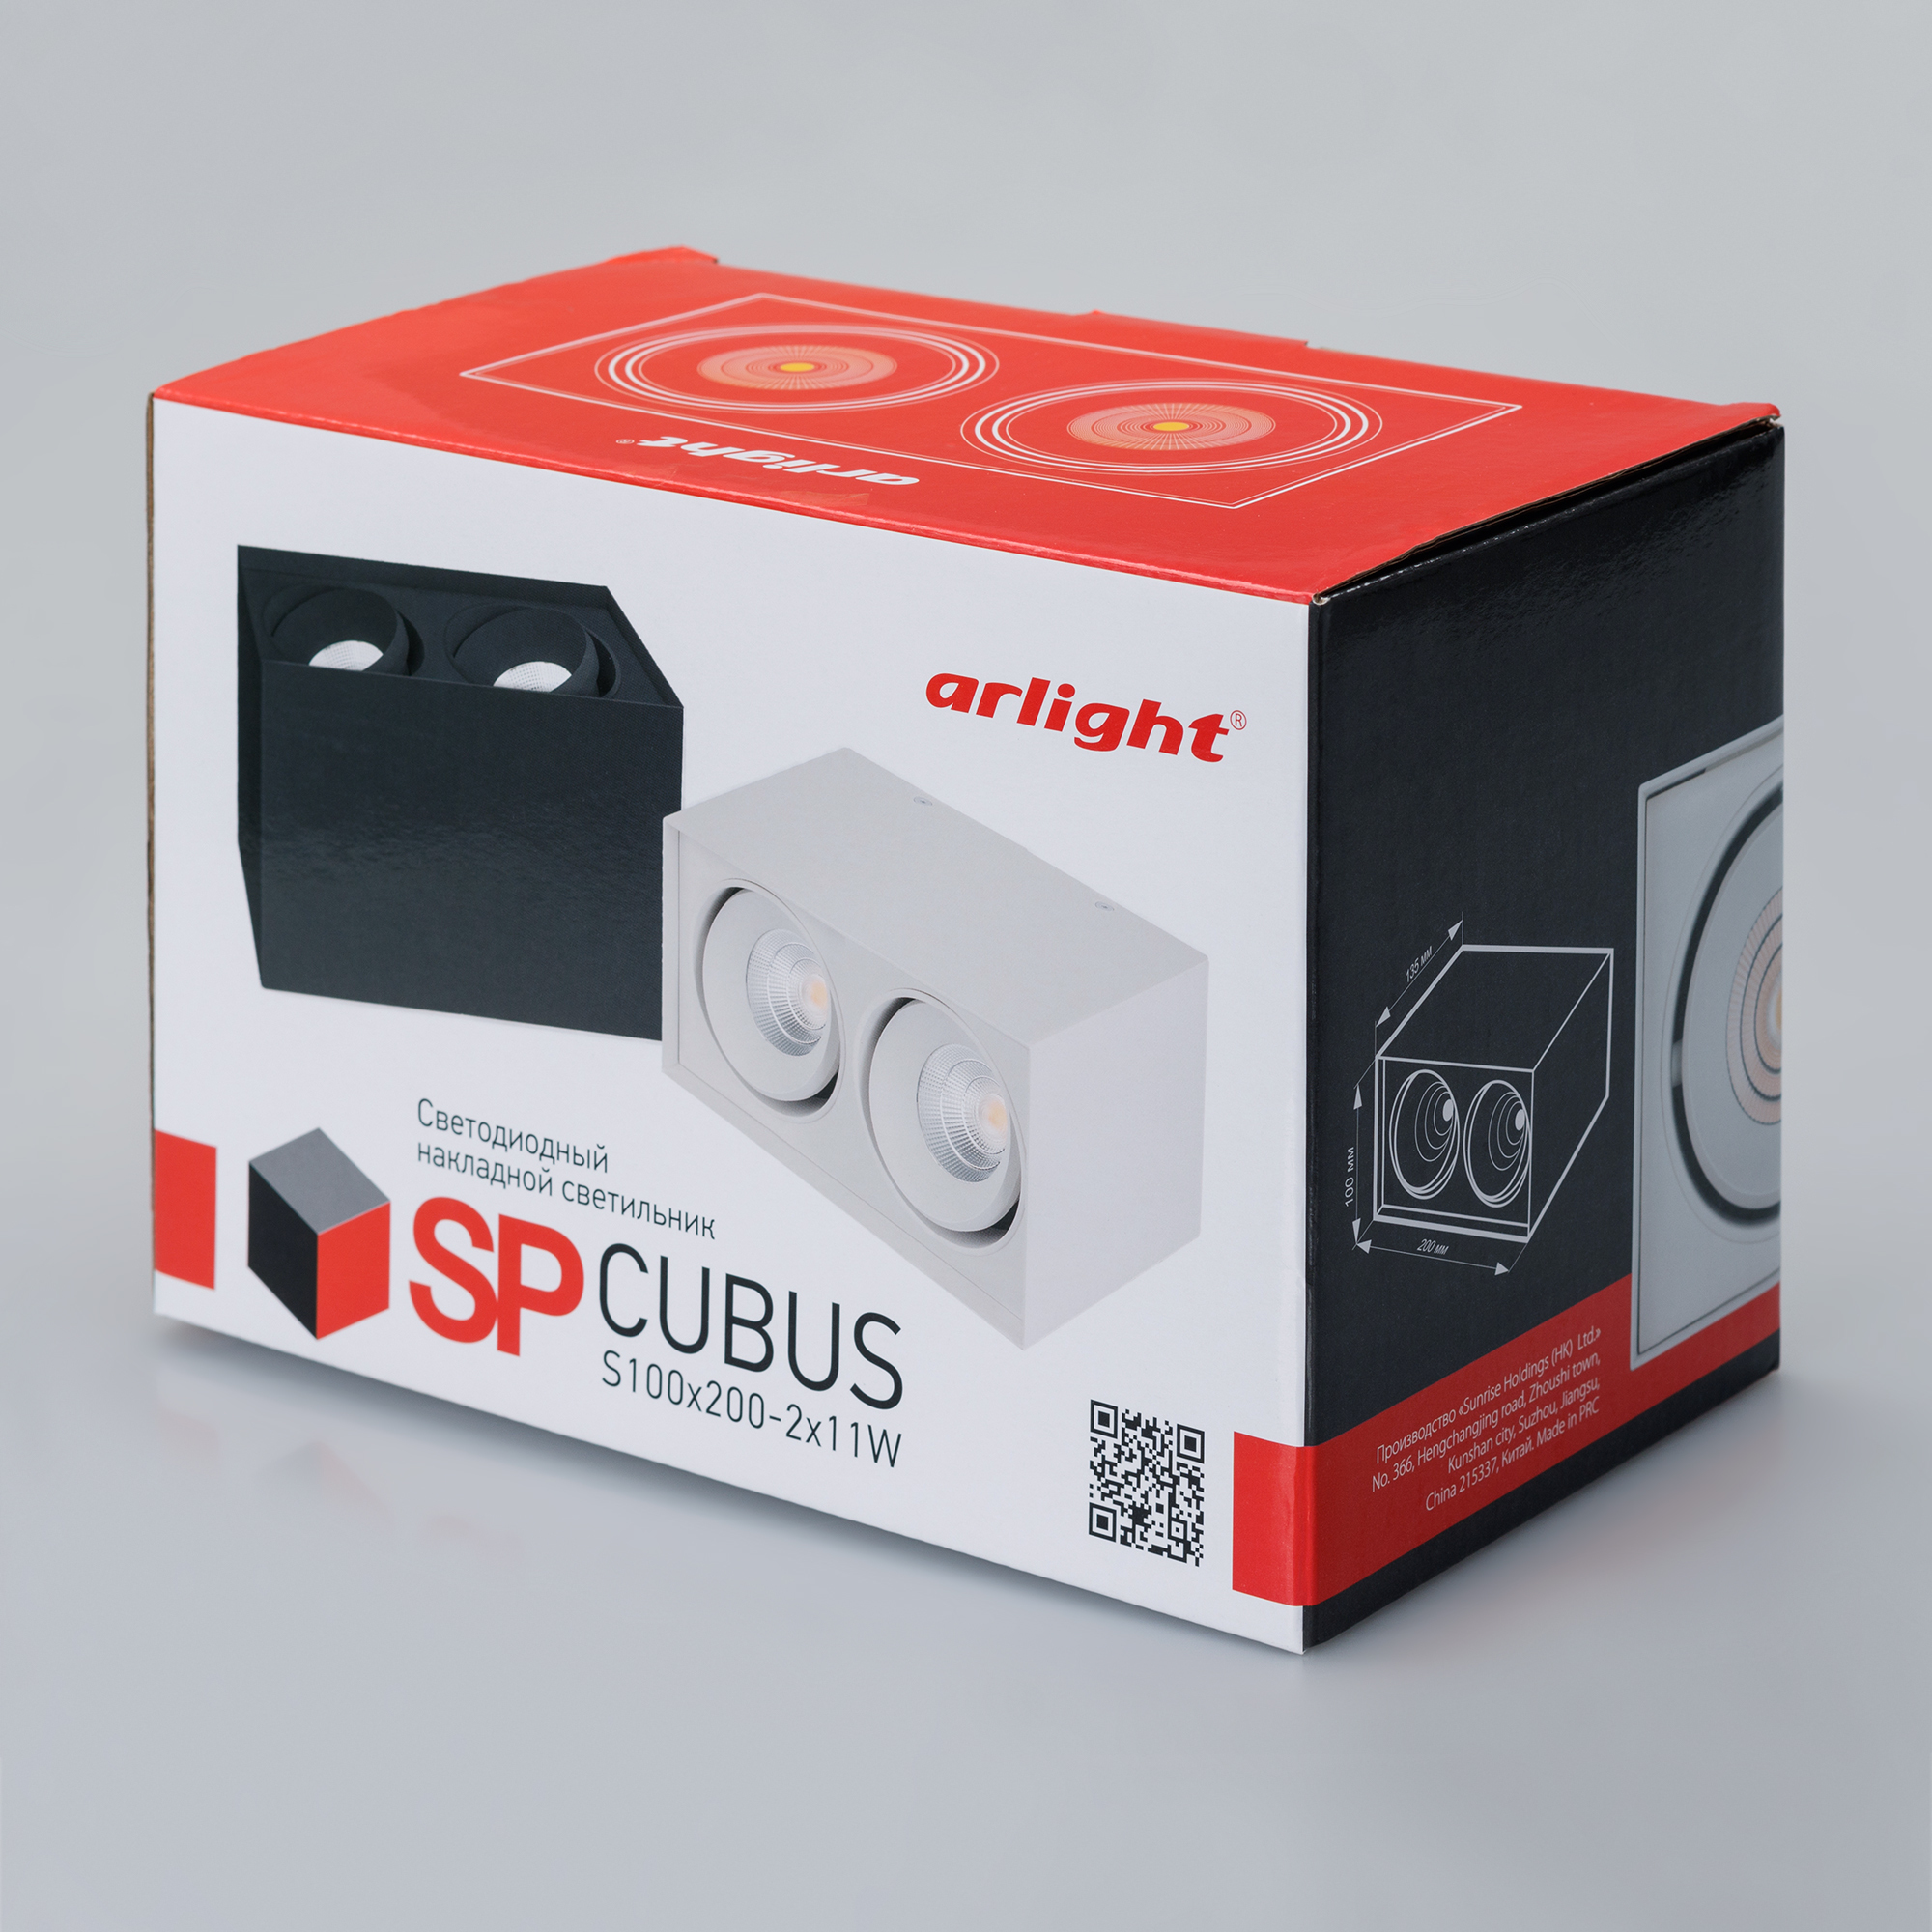 Потолочный светильник SP-CUBUS-S100x200-2x11W Arlight 023085(2), цвет черный 023085(2) - фото 5